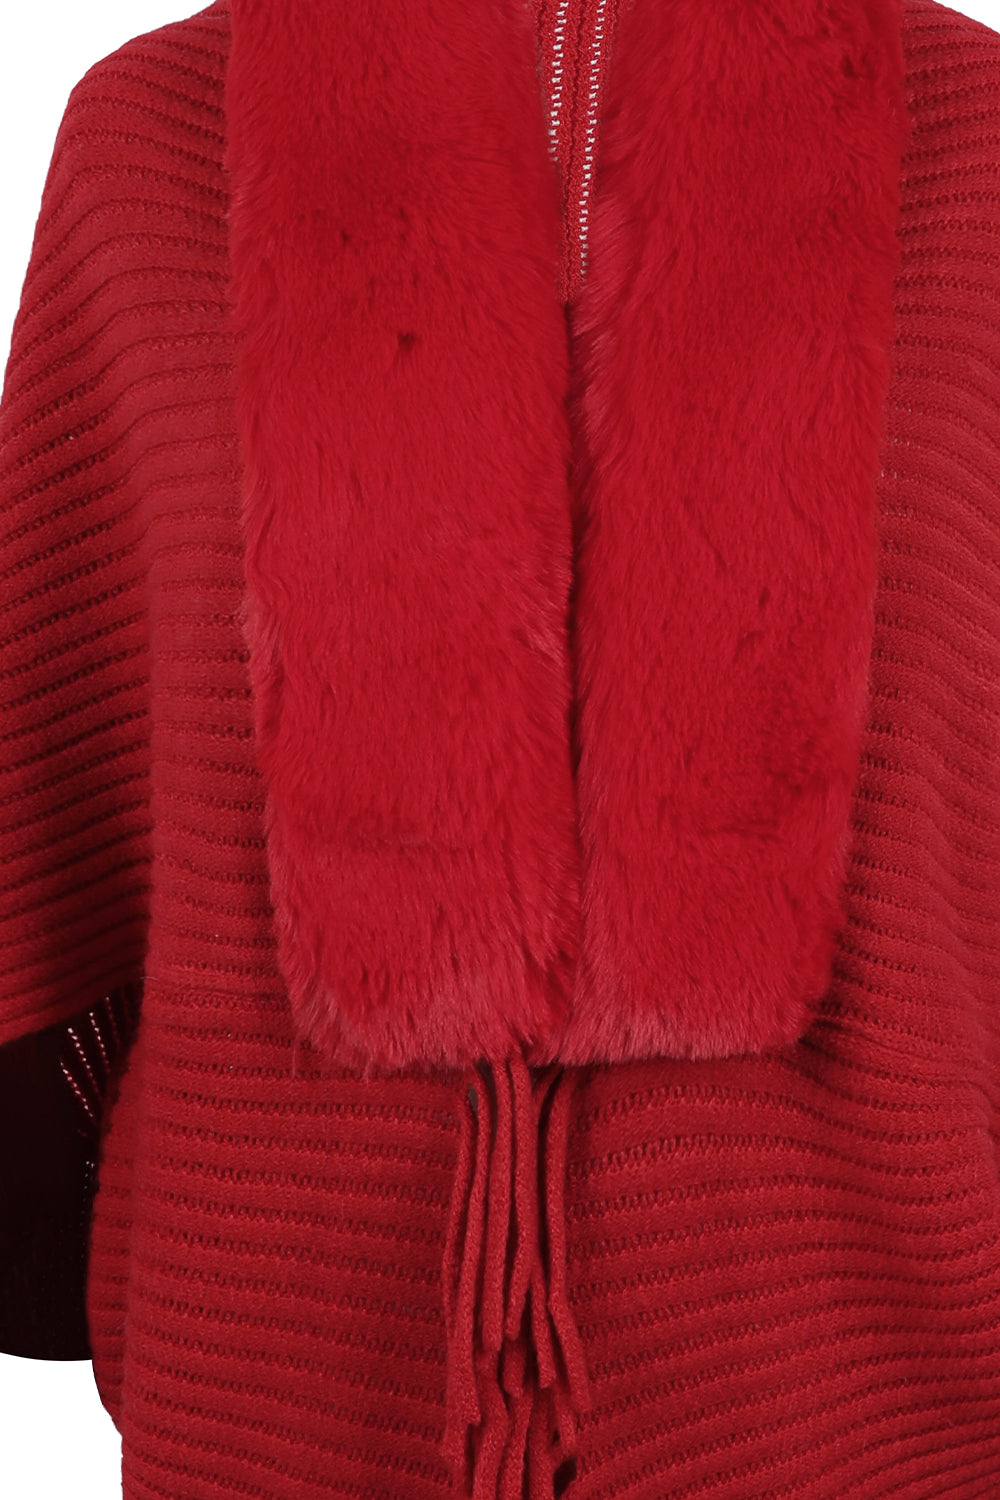 Plush Faux Fur Fringe Hem Oversized Open Front Knit Cardigan Poncho Jacket